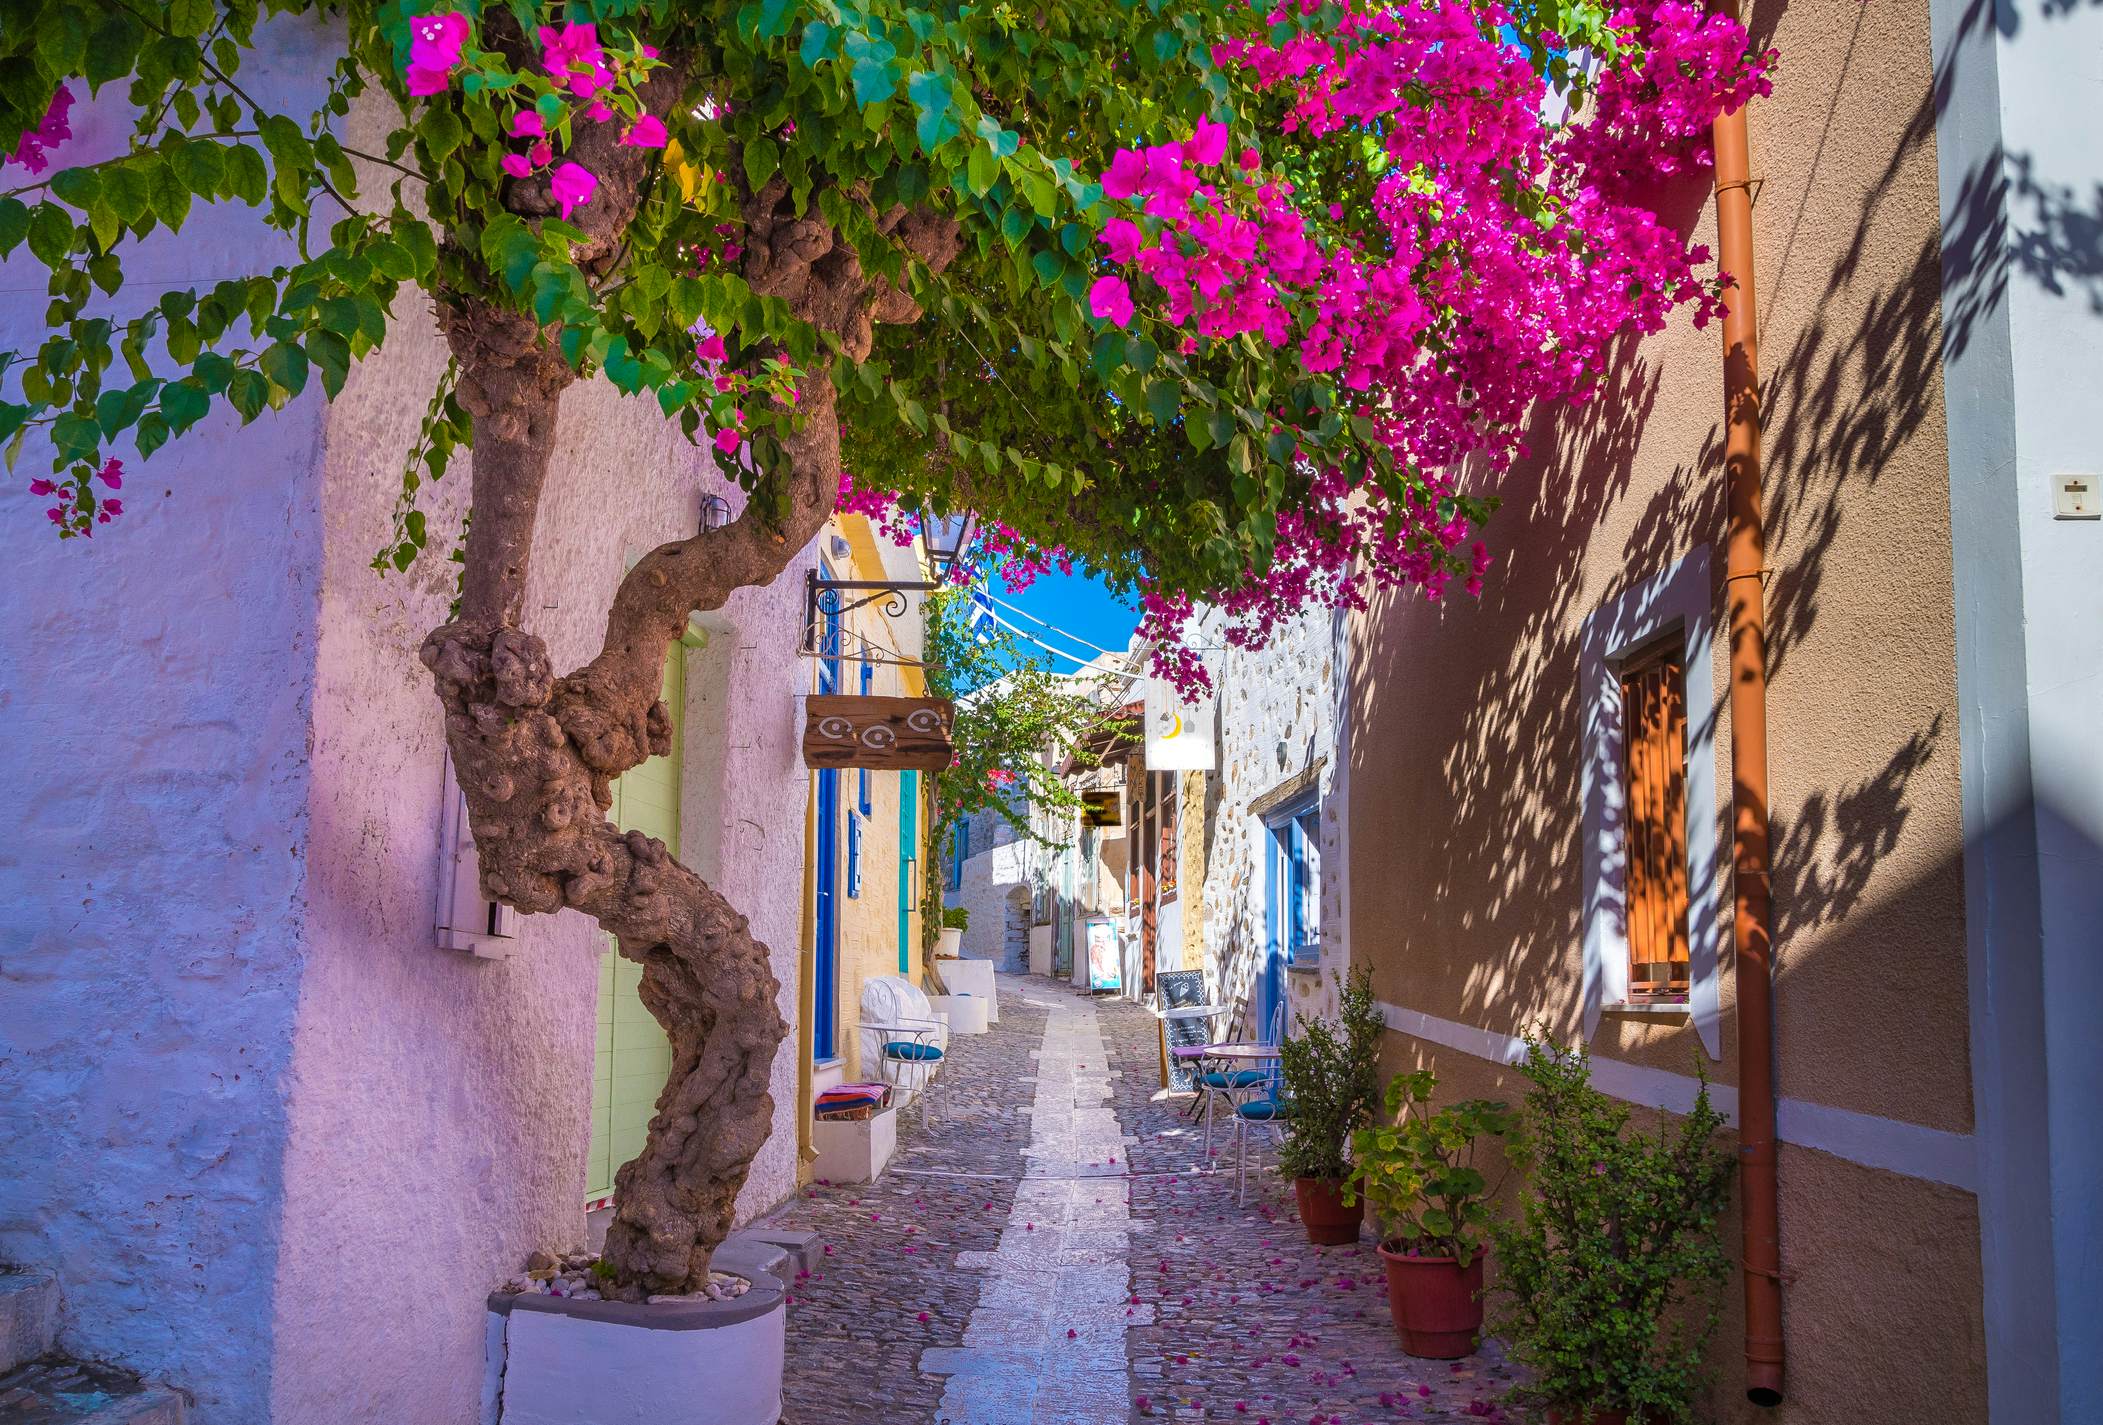 ۱۲ جزیره یونان که باید در لیست سفر هر گردشگری باشند